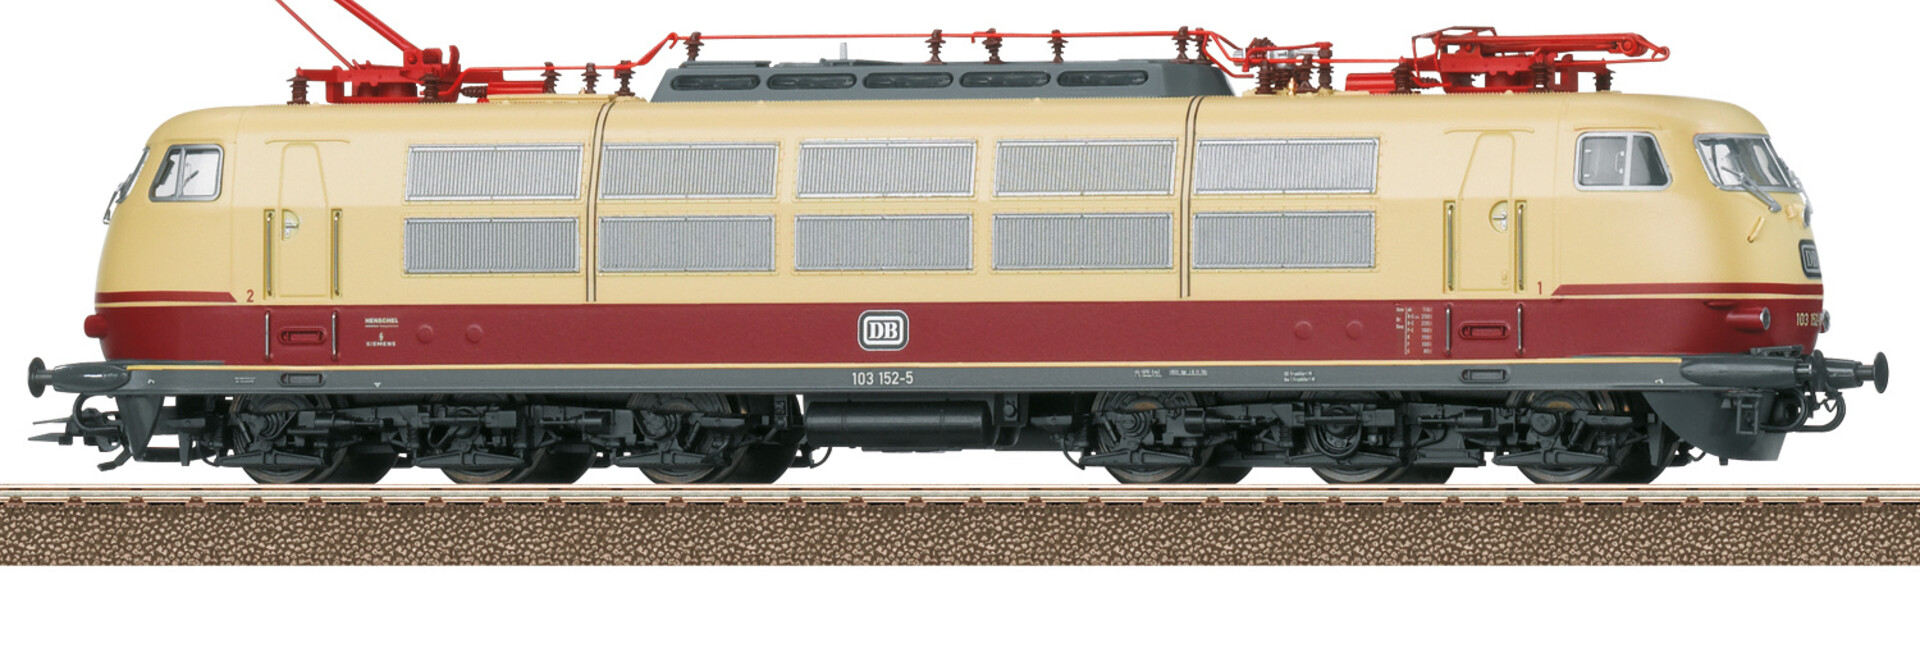 22931 Baureihe 103 van de DB DCC met sound